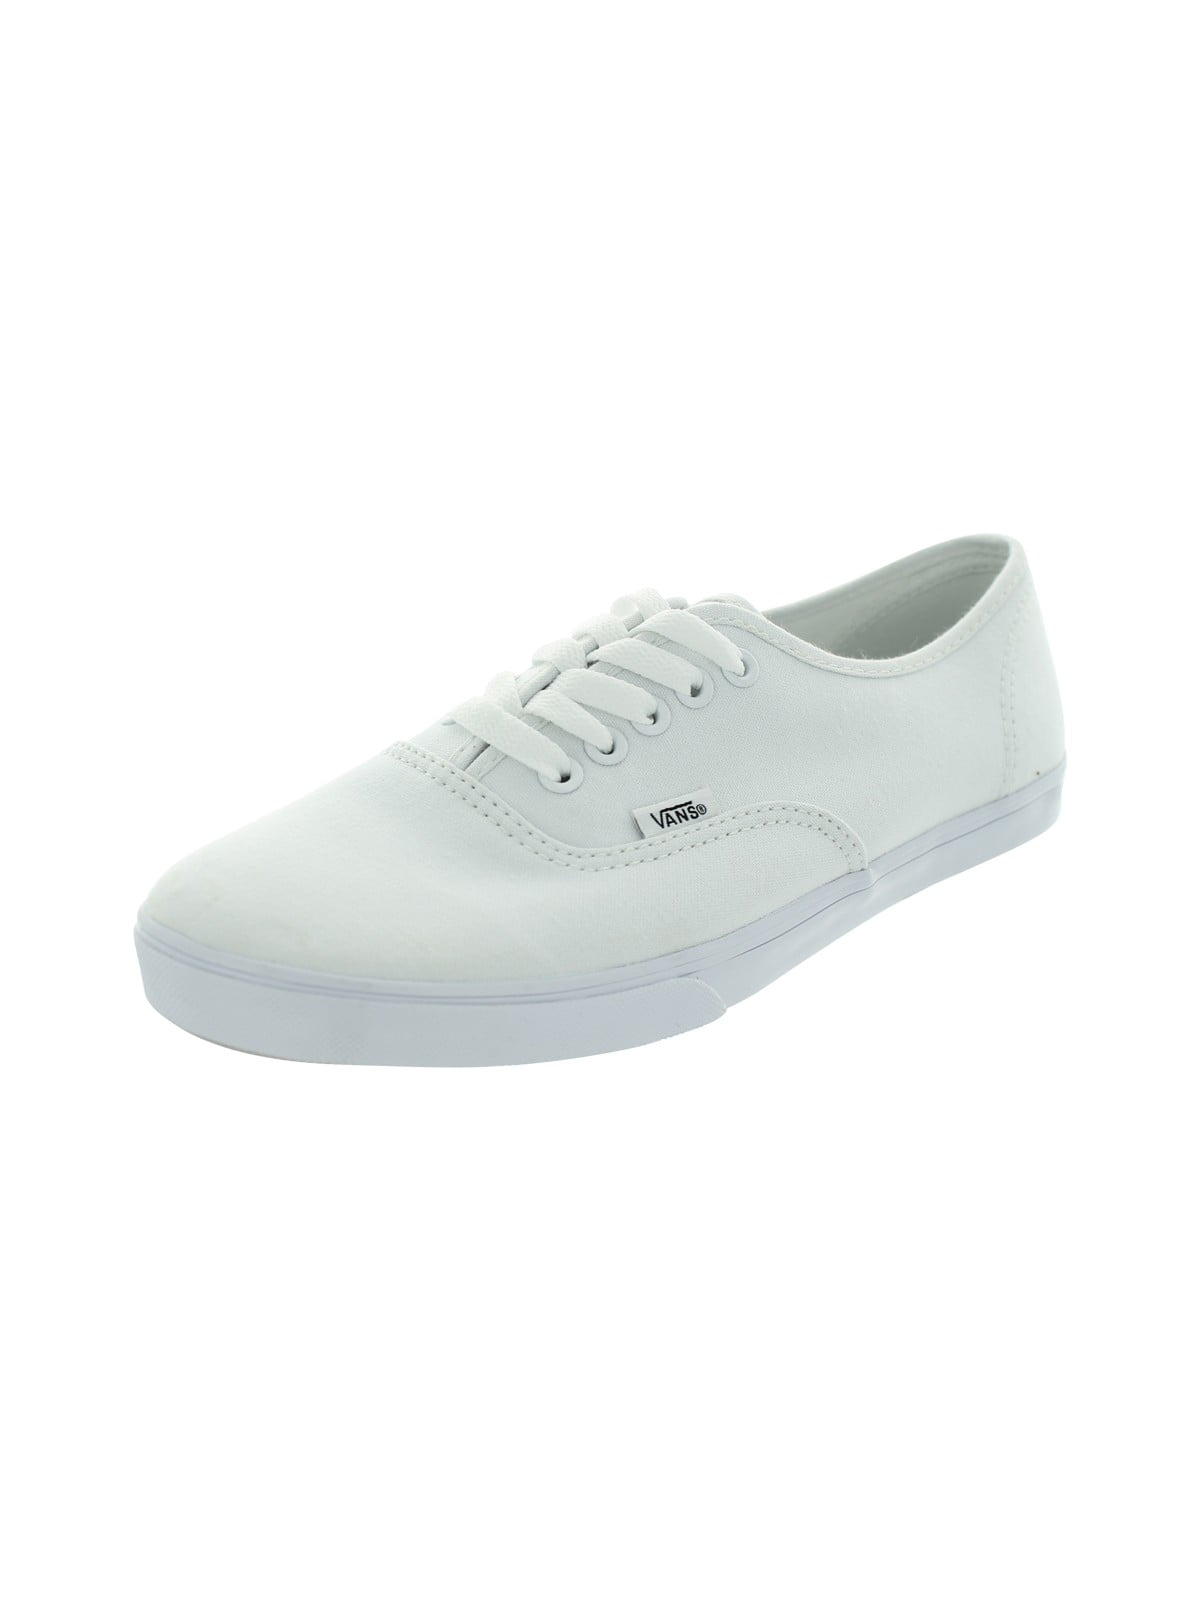 vans authentic lo pro skate shoe white